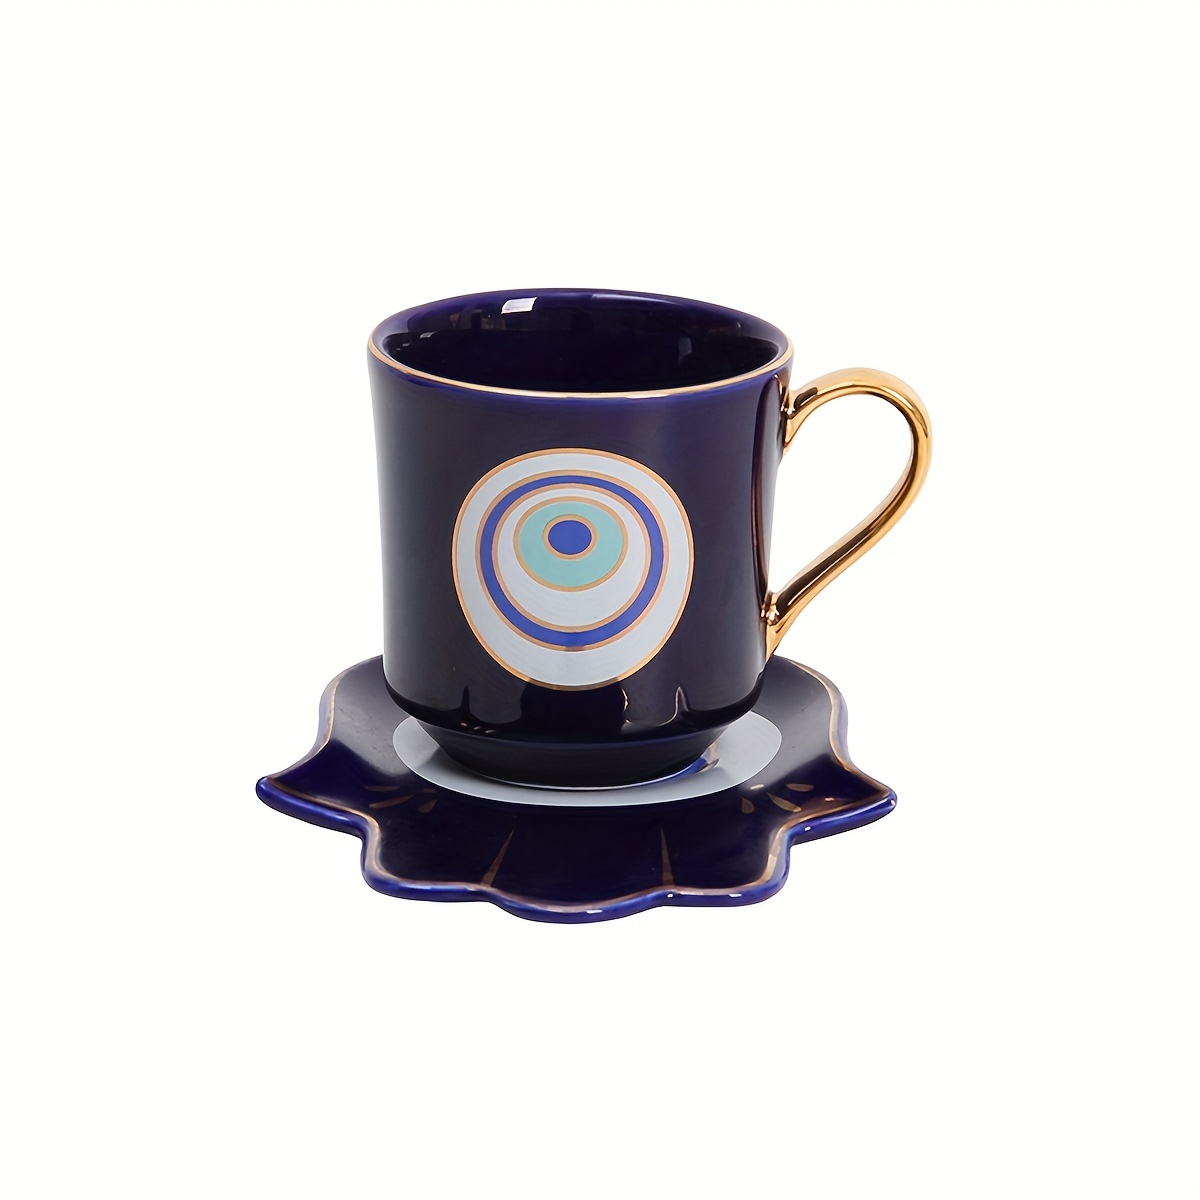 Artisanal Evil Eye Coffee Mug - Handmade Turkish Evil Eye Protection Ceramic  Mug – Enjoy Ceramic Art